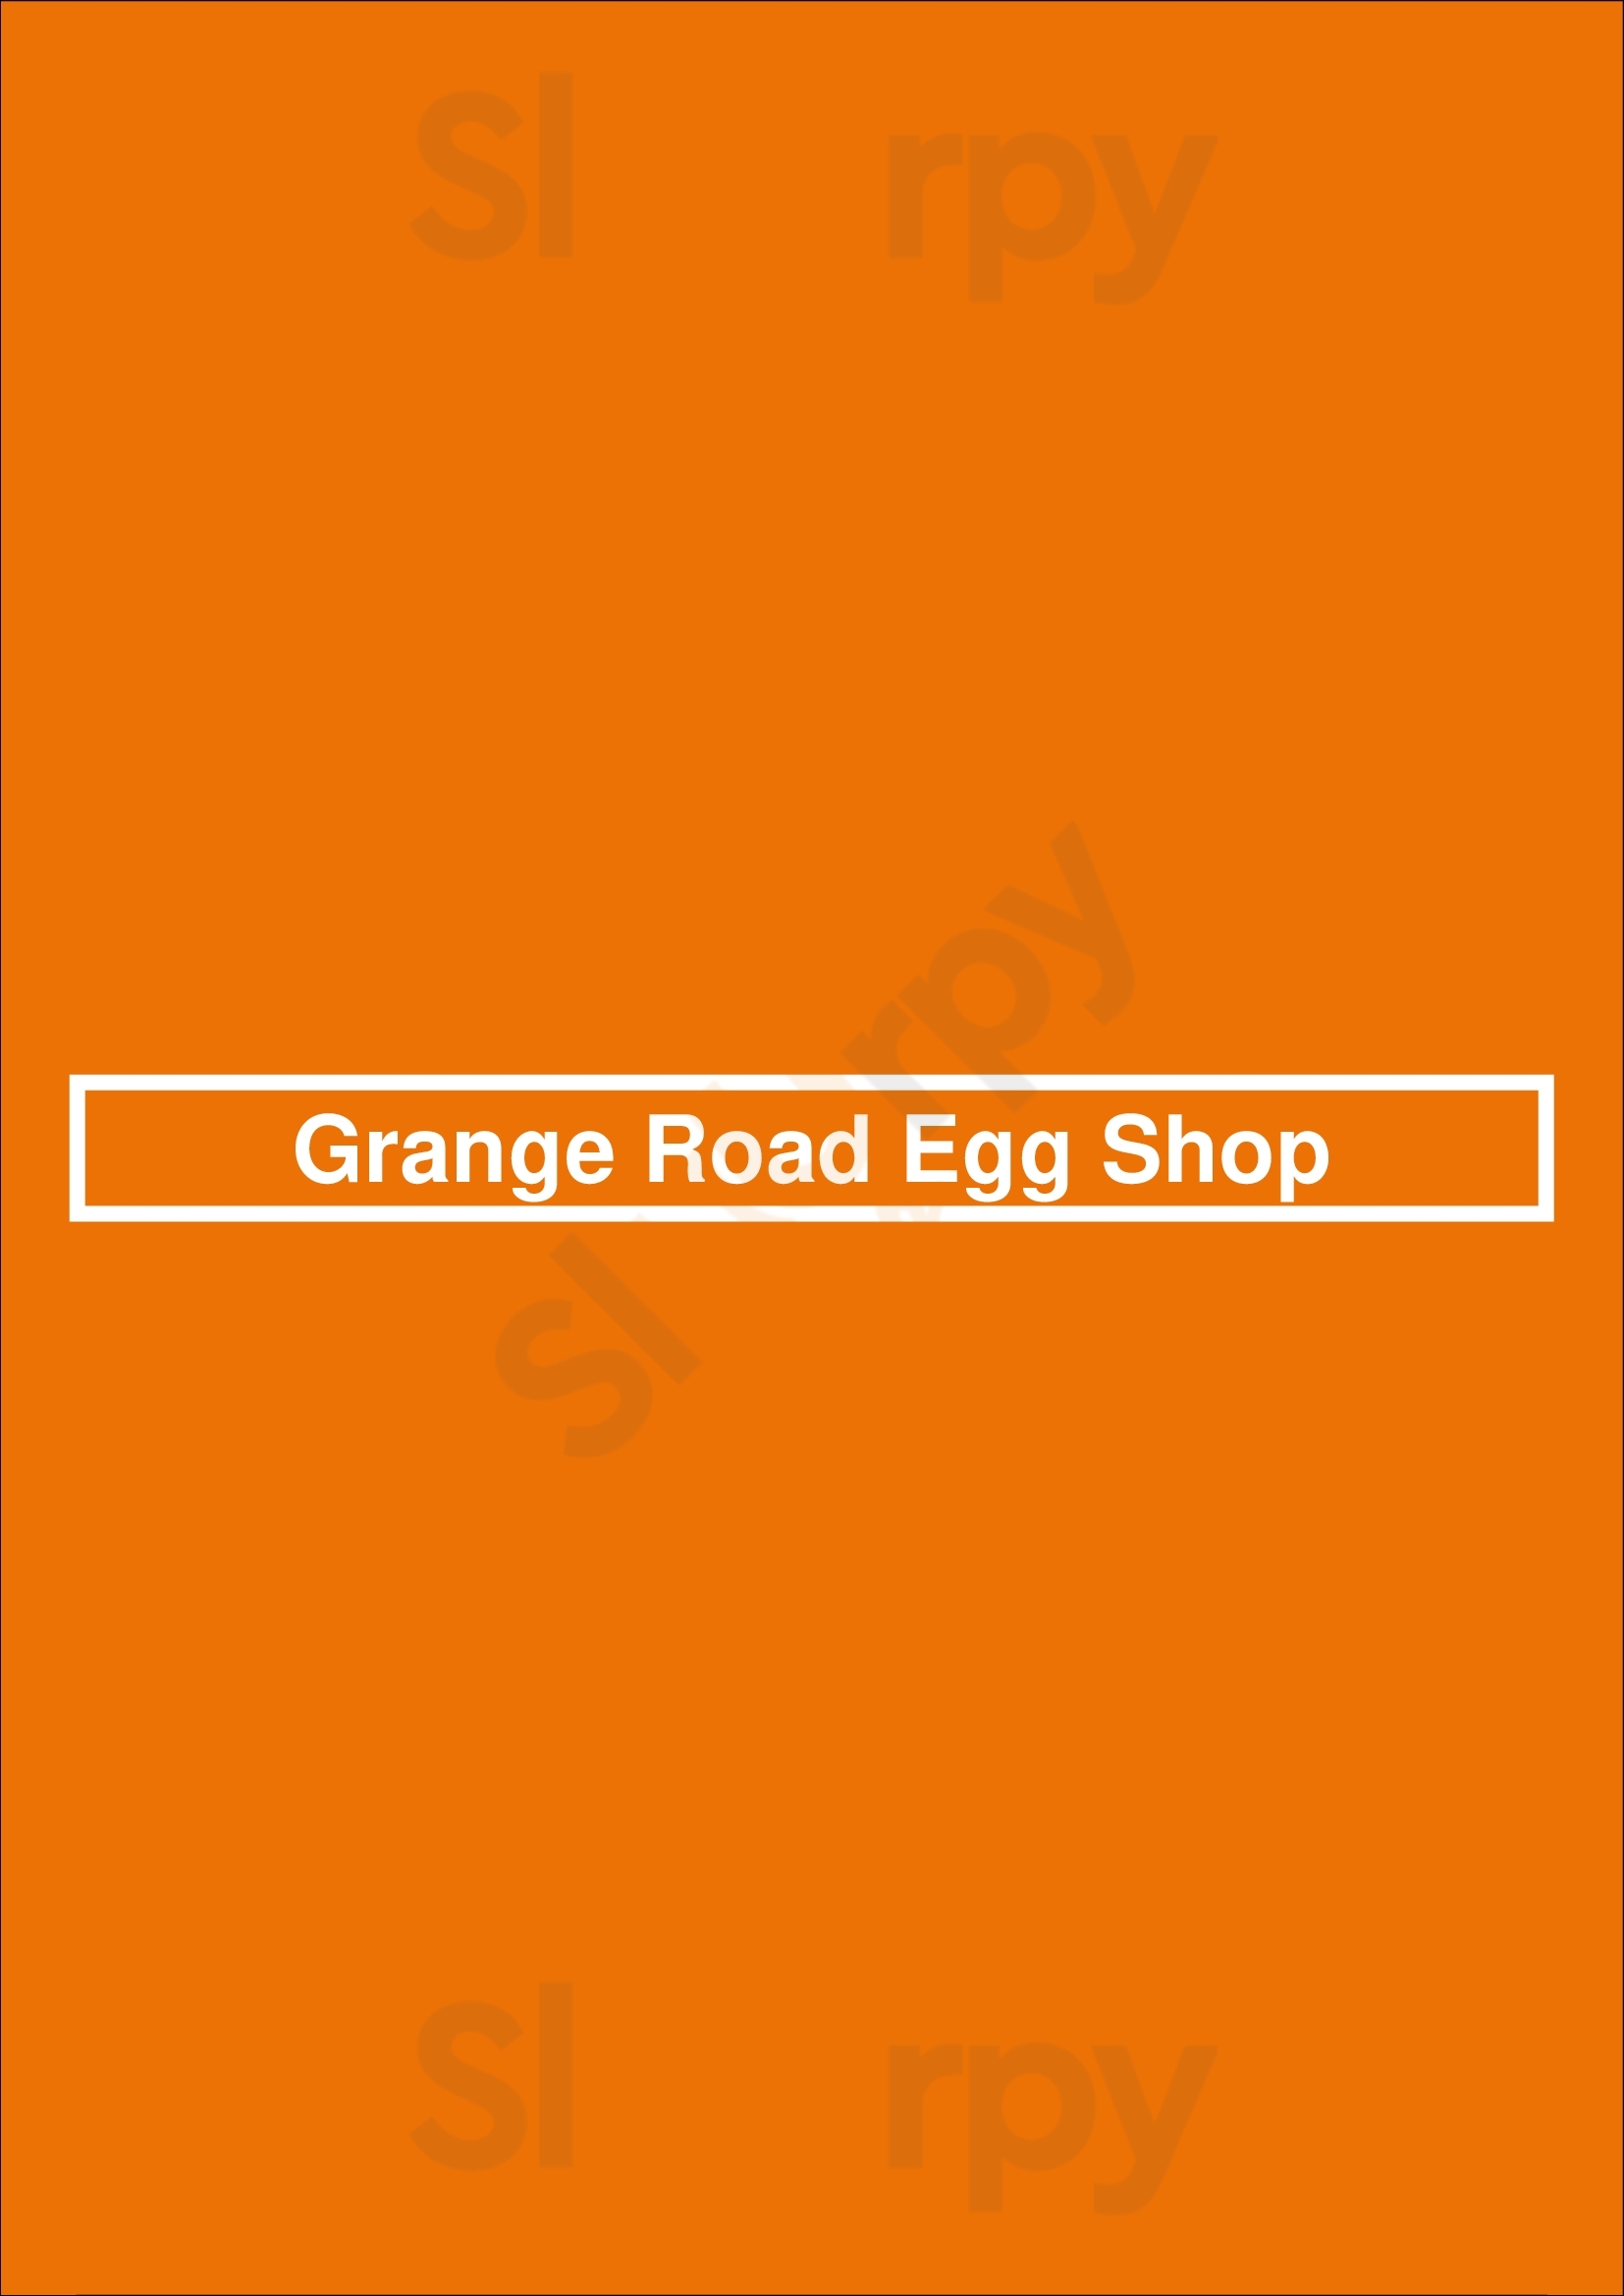 The Egg Shop Toorak Menu - 1